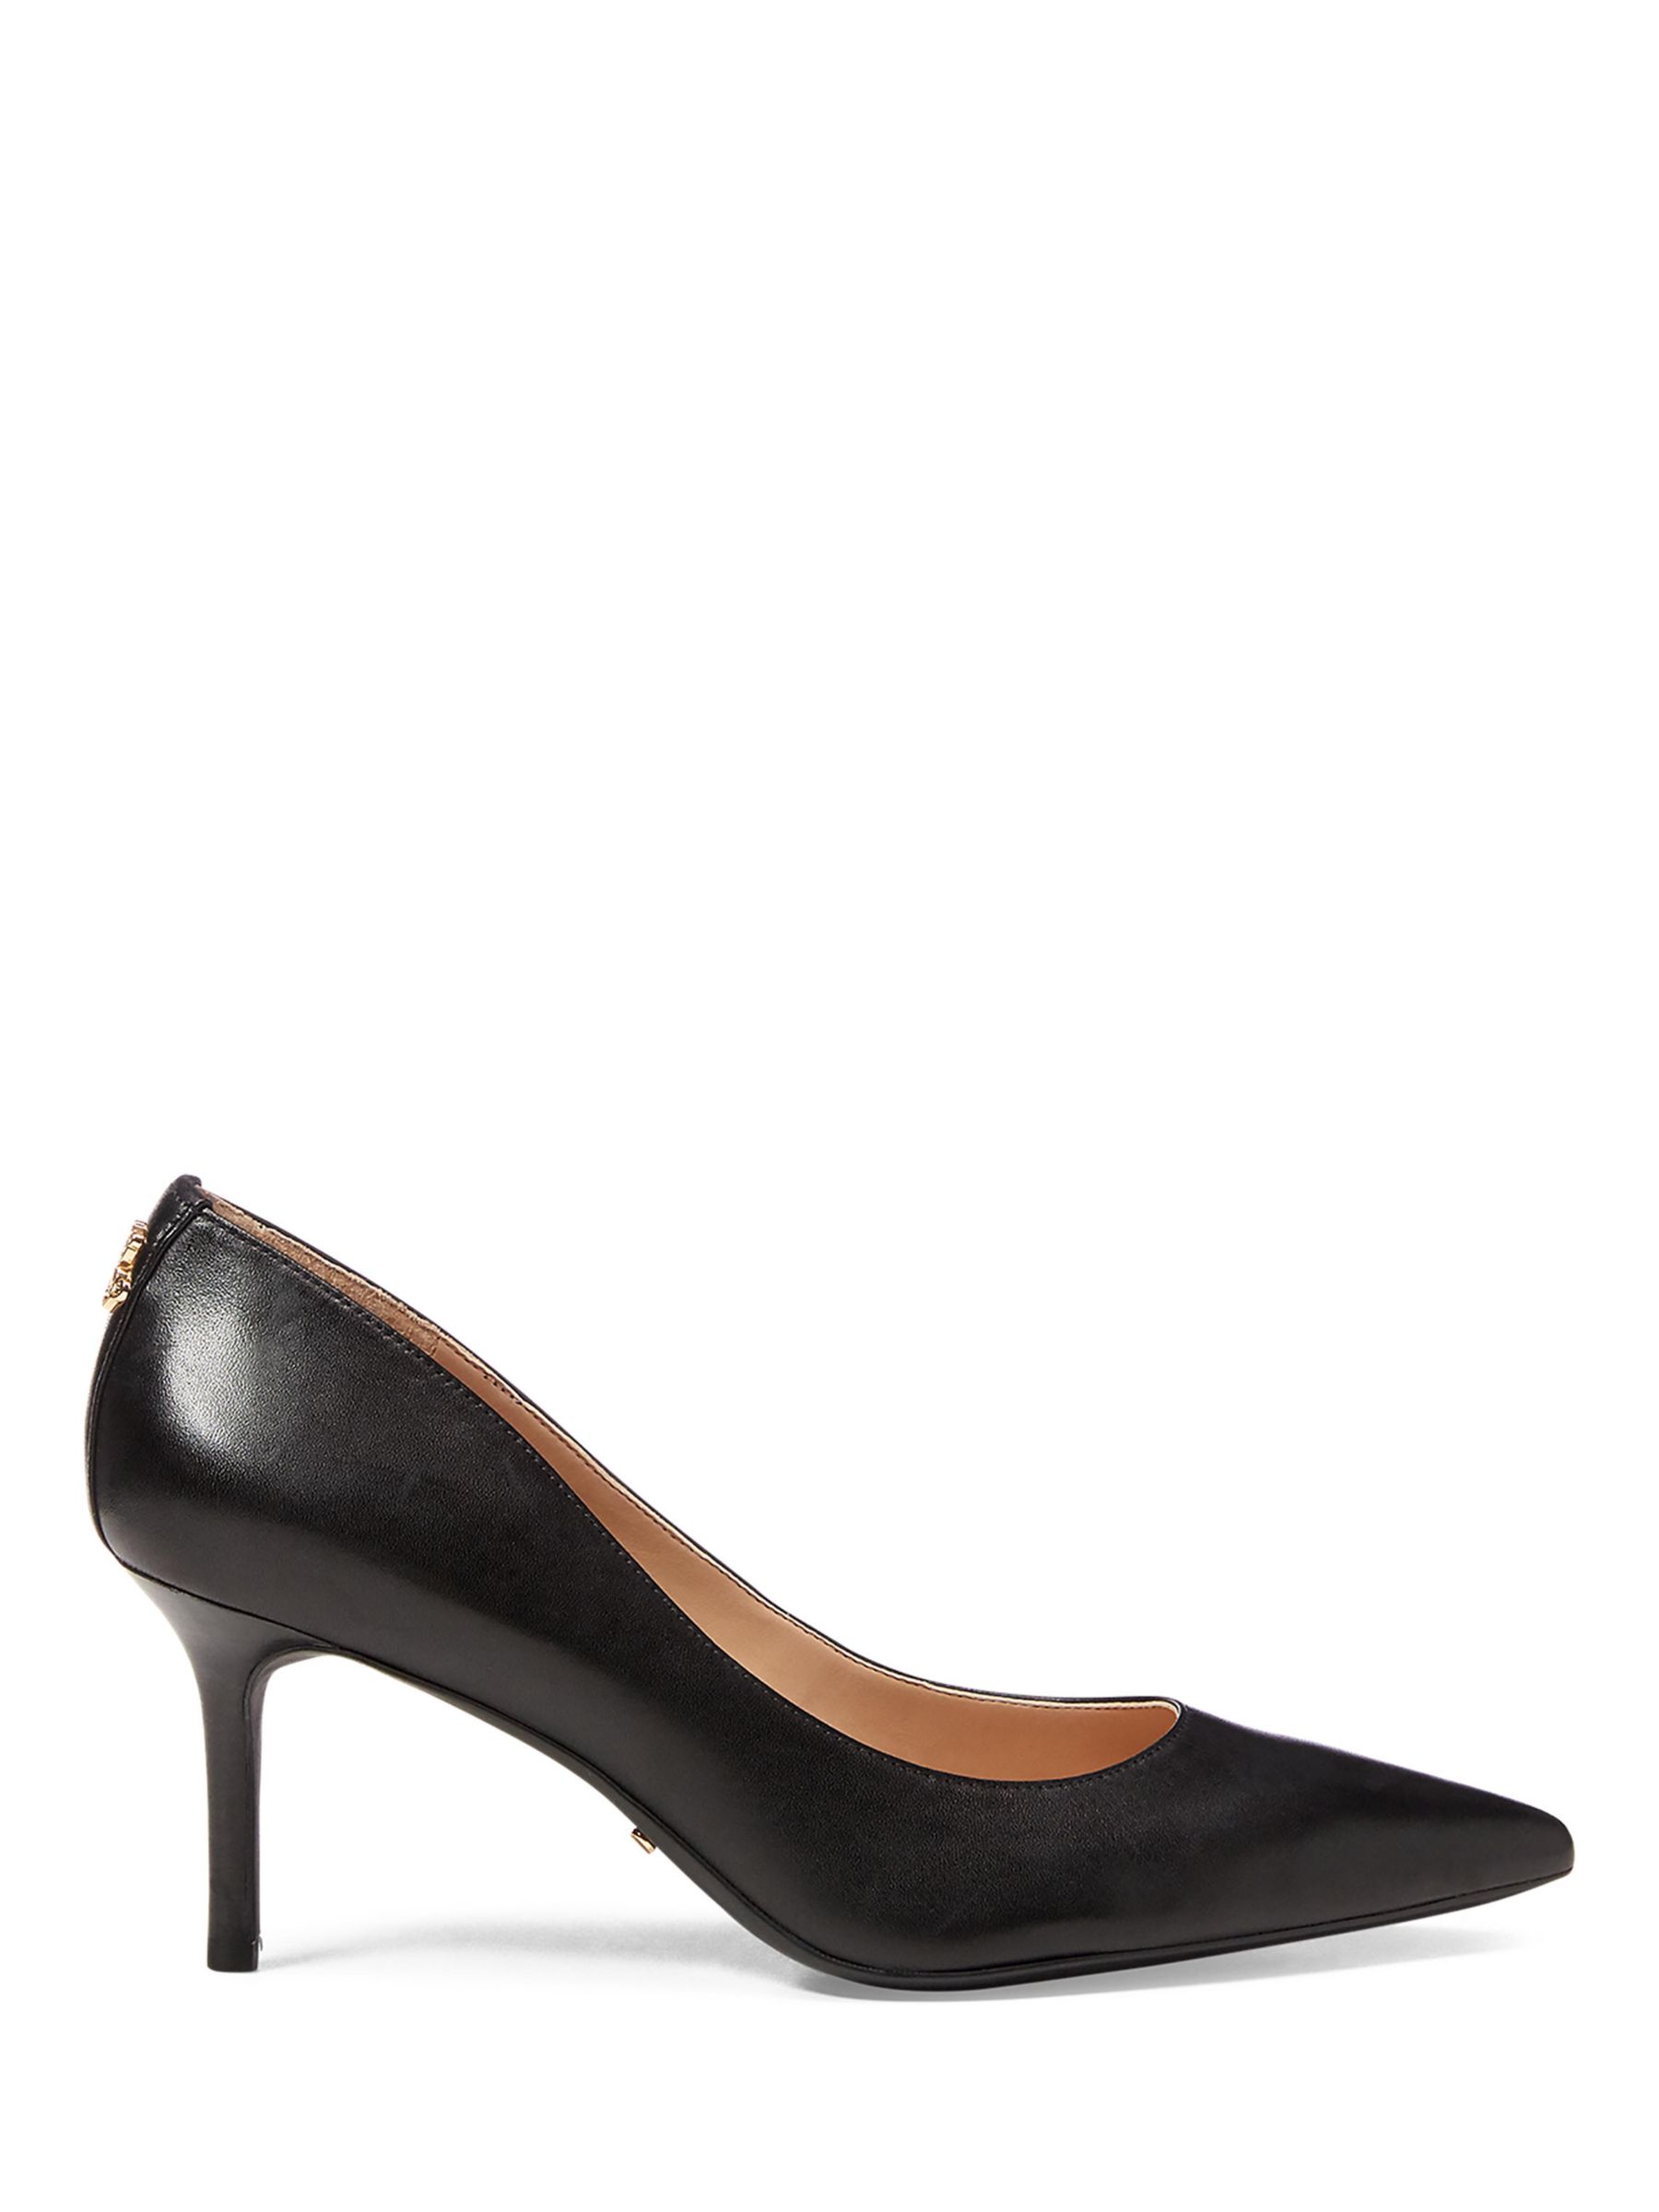 Lauren Ralph Lauren Lanette Leather Pointed Toe Stiletto Court Shoes, Black